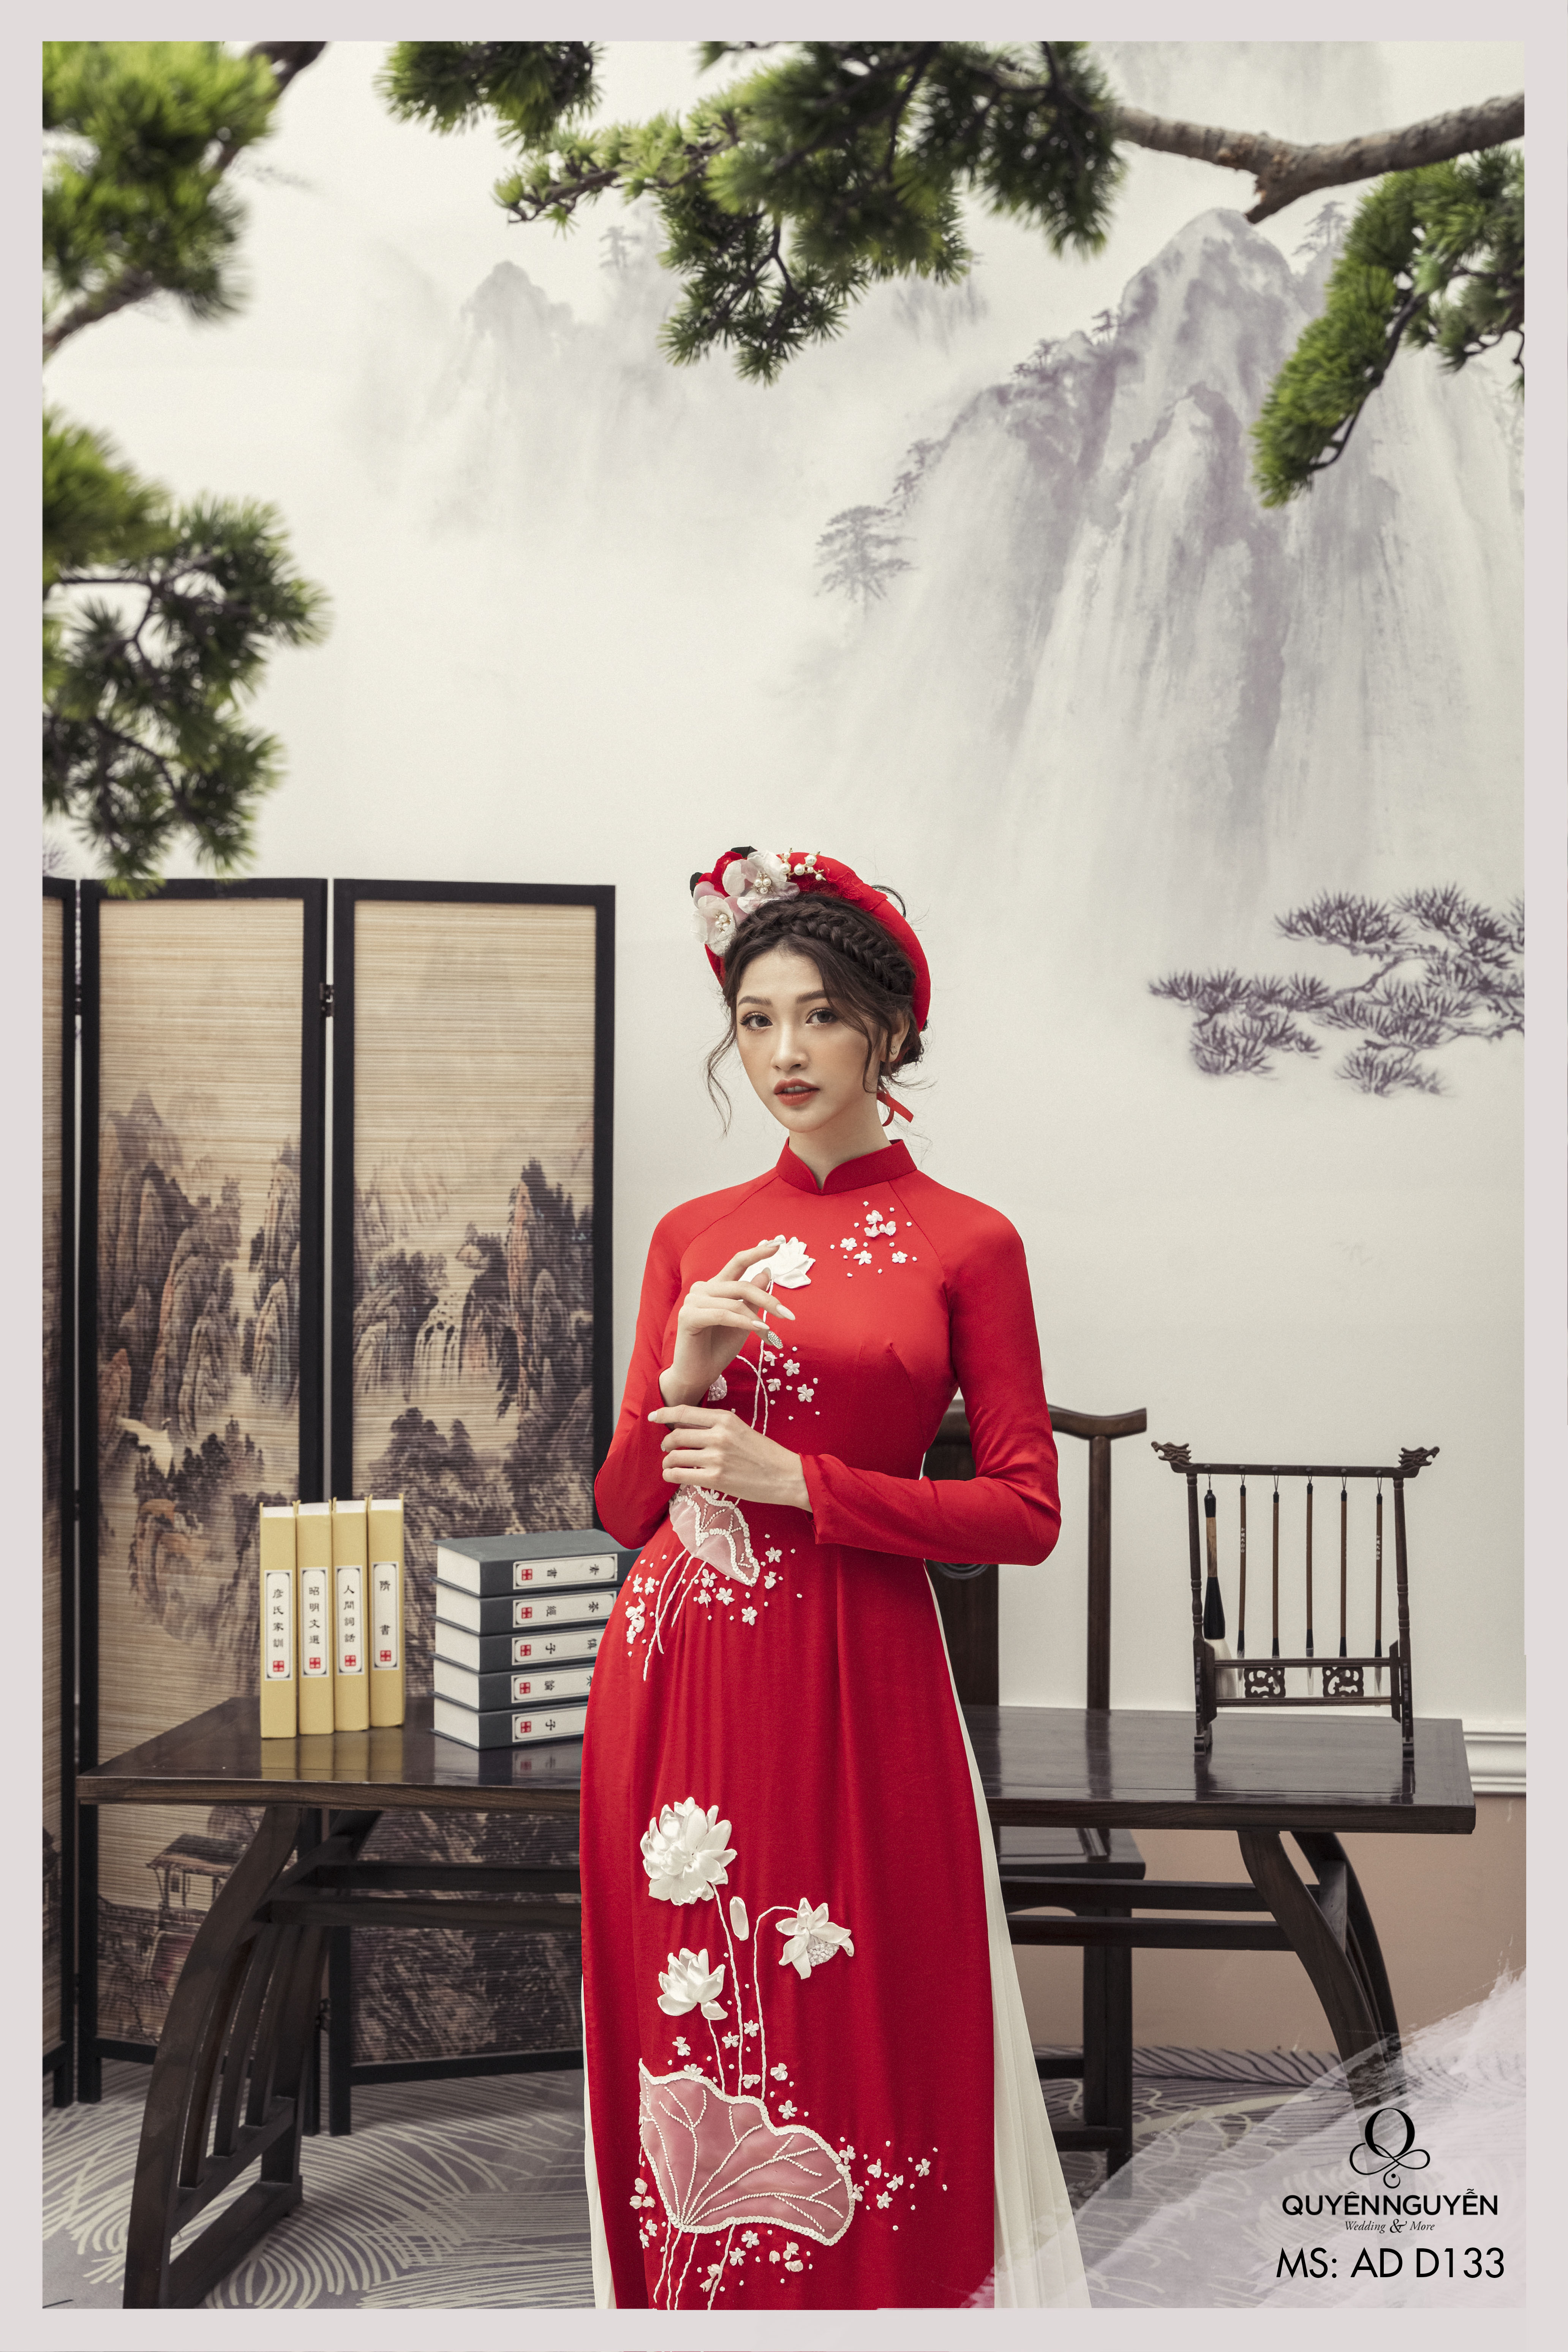 Áo dài hoa sen là một trong những trang phục truyền thống đẹp nhất của Việt Nam. Thiết kế tinh tế với họa tiết sen rực rỡ sẽ làm nổi bật vẻ đẹp và phong cách của bạn. Hãy thưởng thức hình ảnh này và cảm nhận sự thanh lịch và đẳng cấp của áo dài hoa sen.